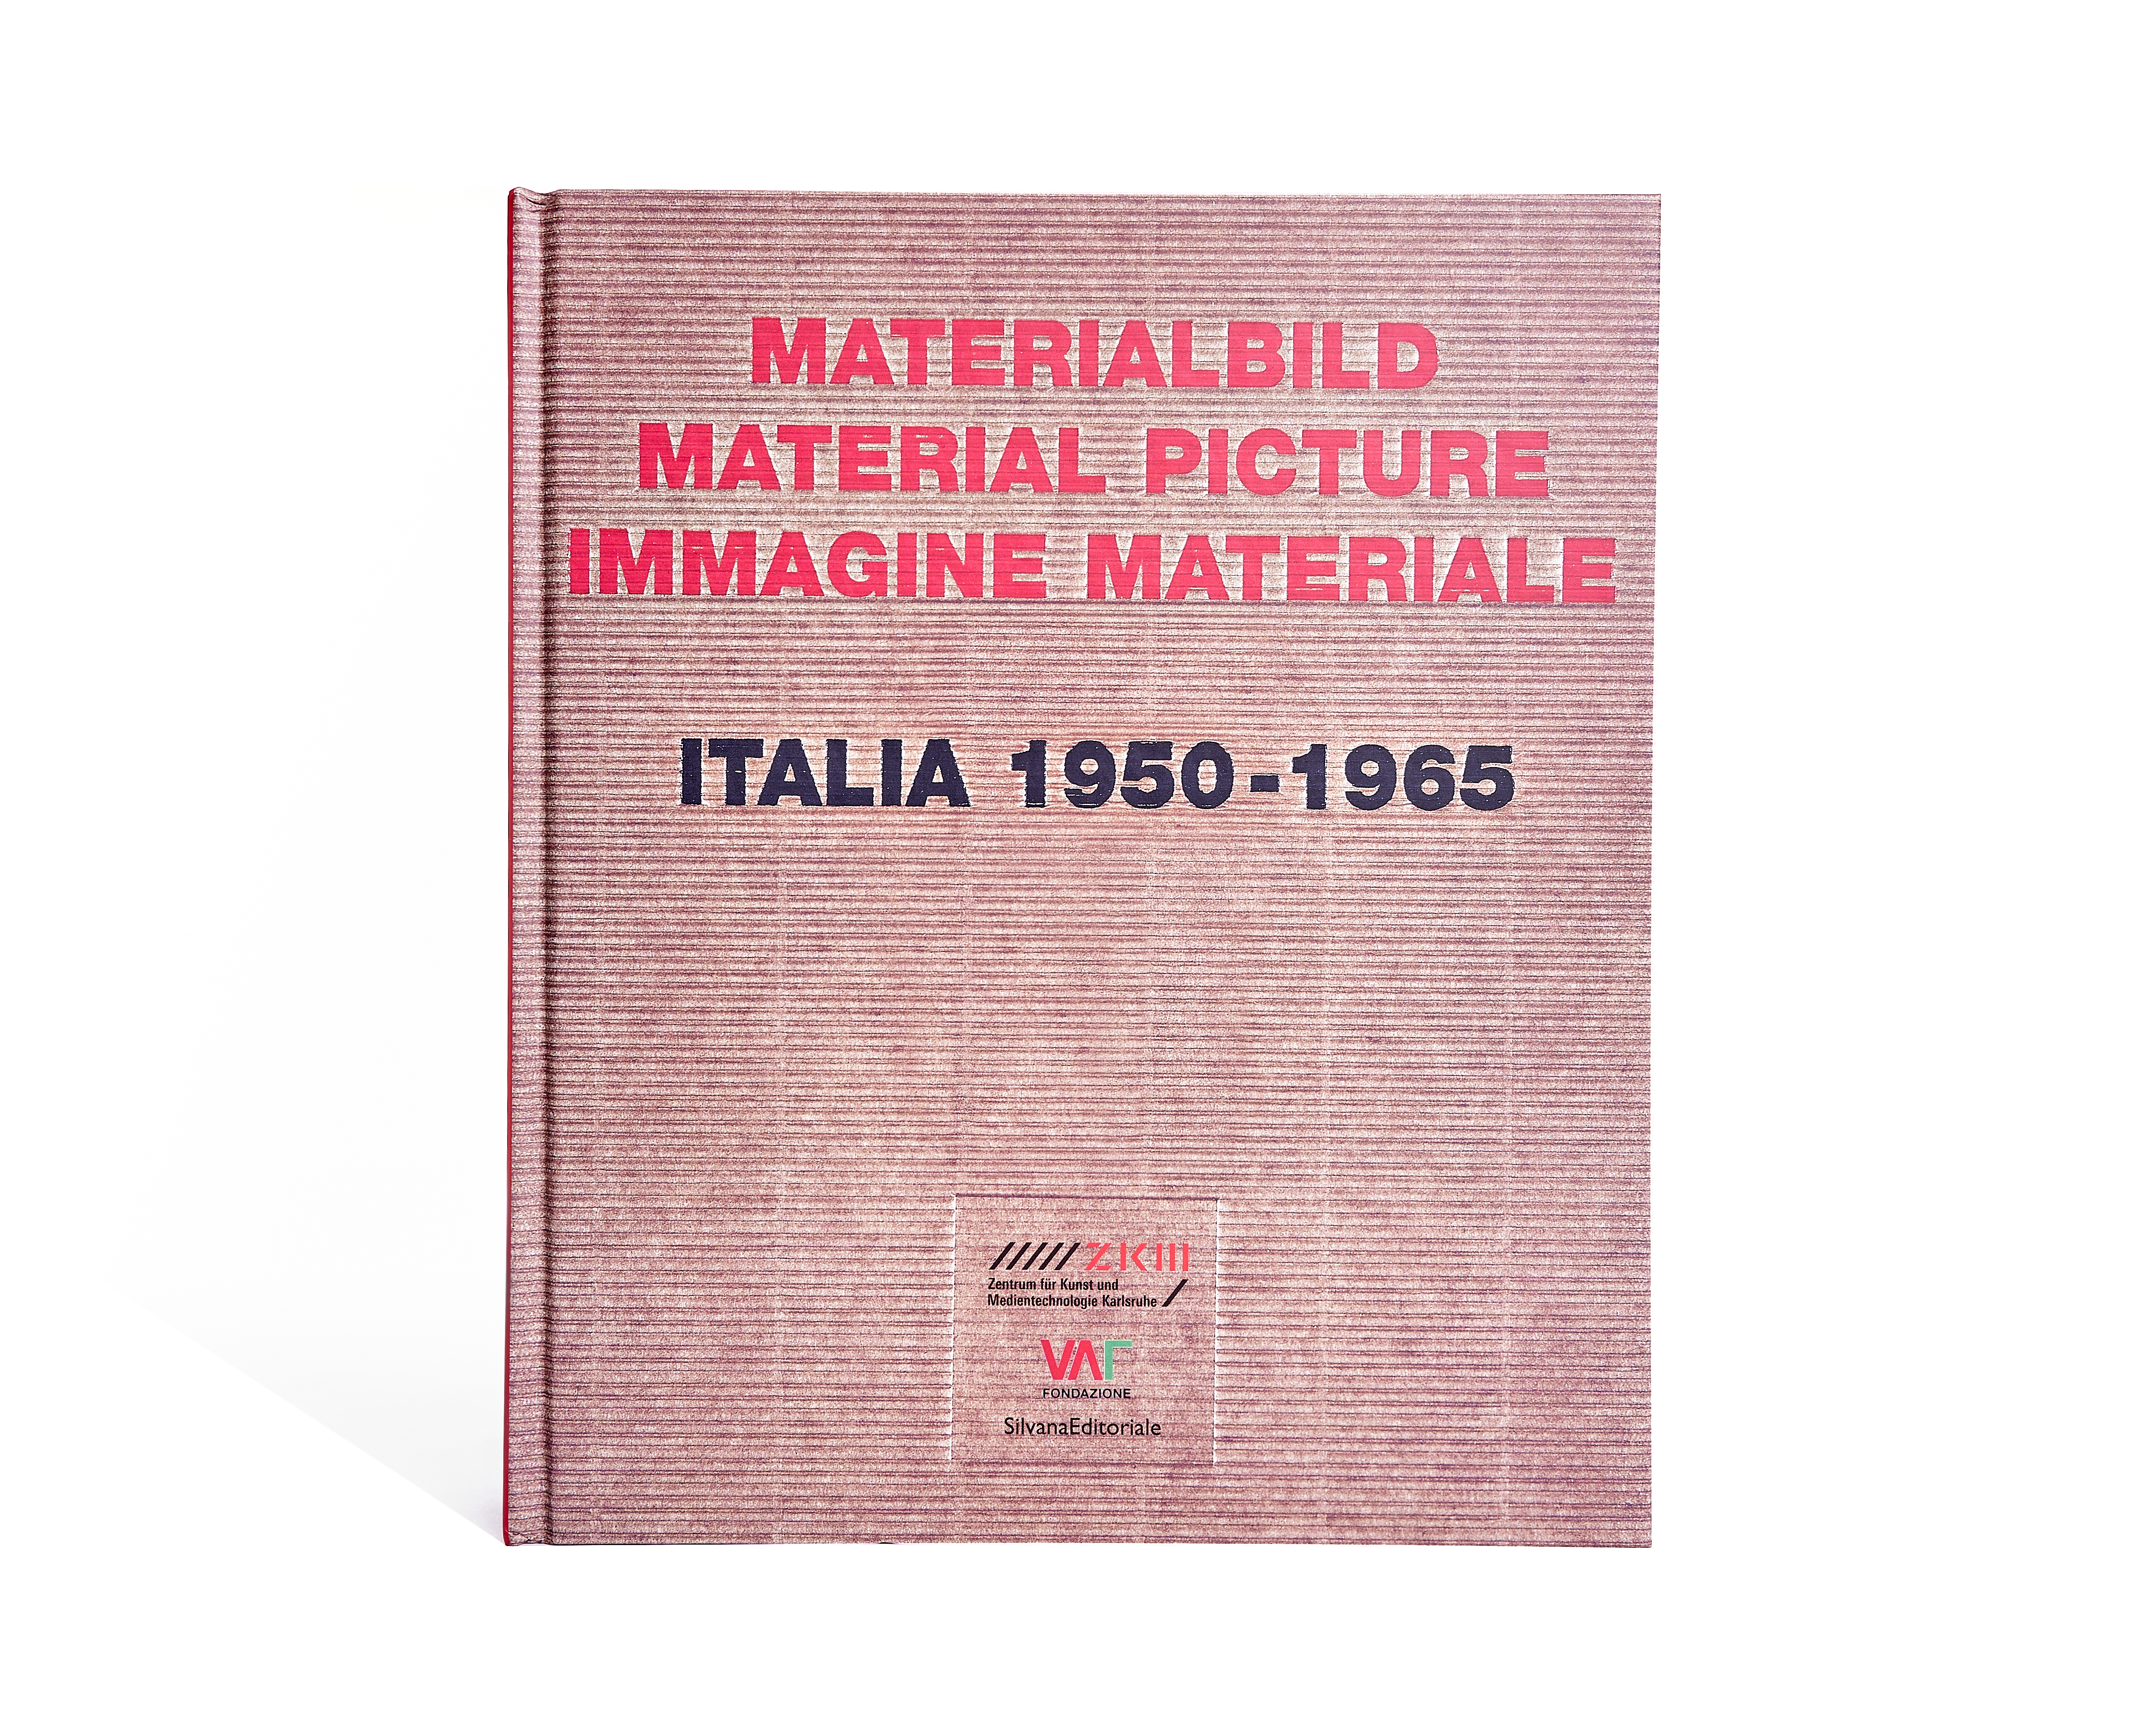 Materialbild / Material picture / Immagine materiale